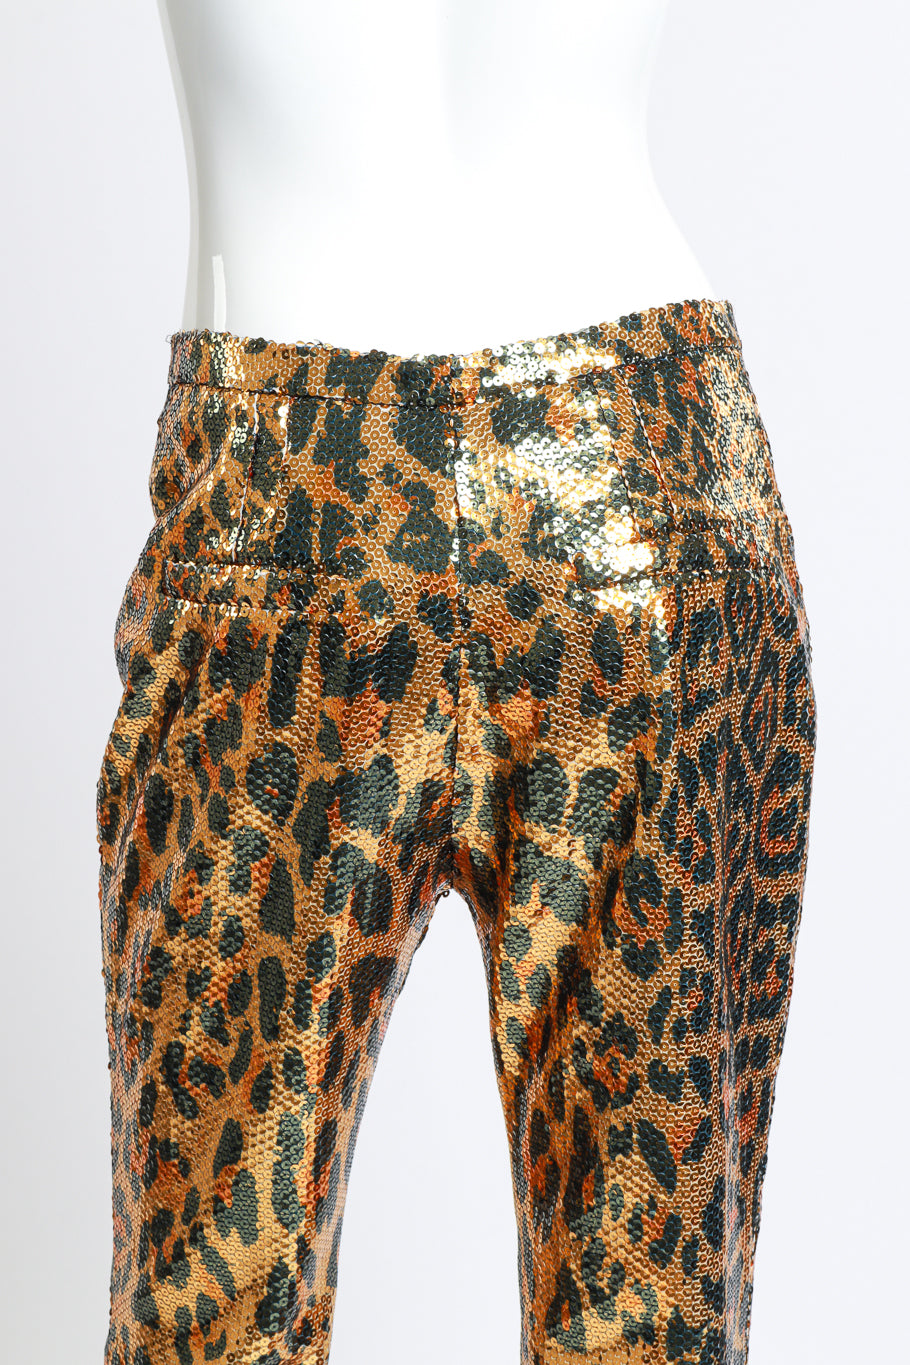 Paco Rabanne Sequin Leopard Pants back detail mannequin @RECESS LA